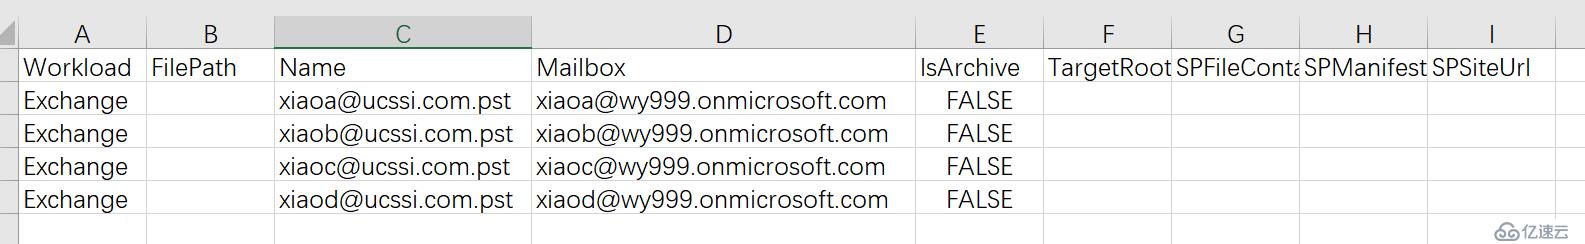 Office365跨订阅迁移邮箱-批量导入用户PST文件